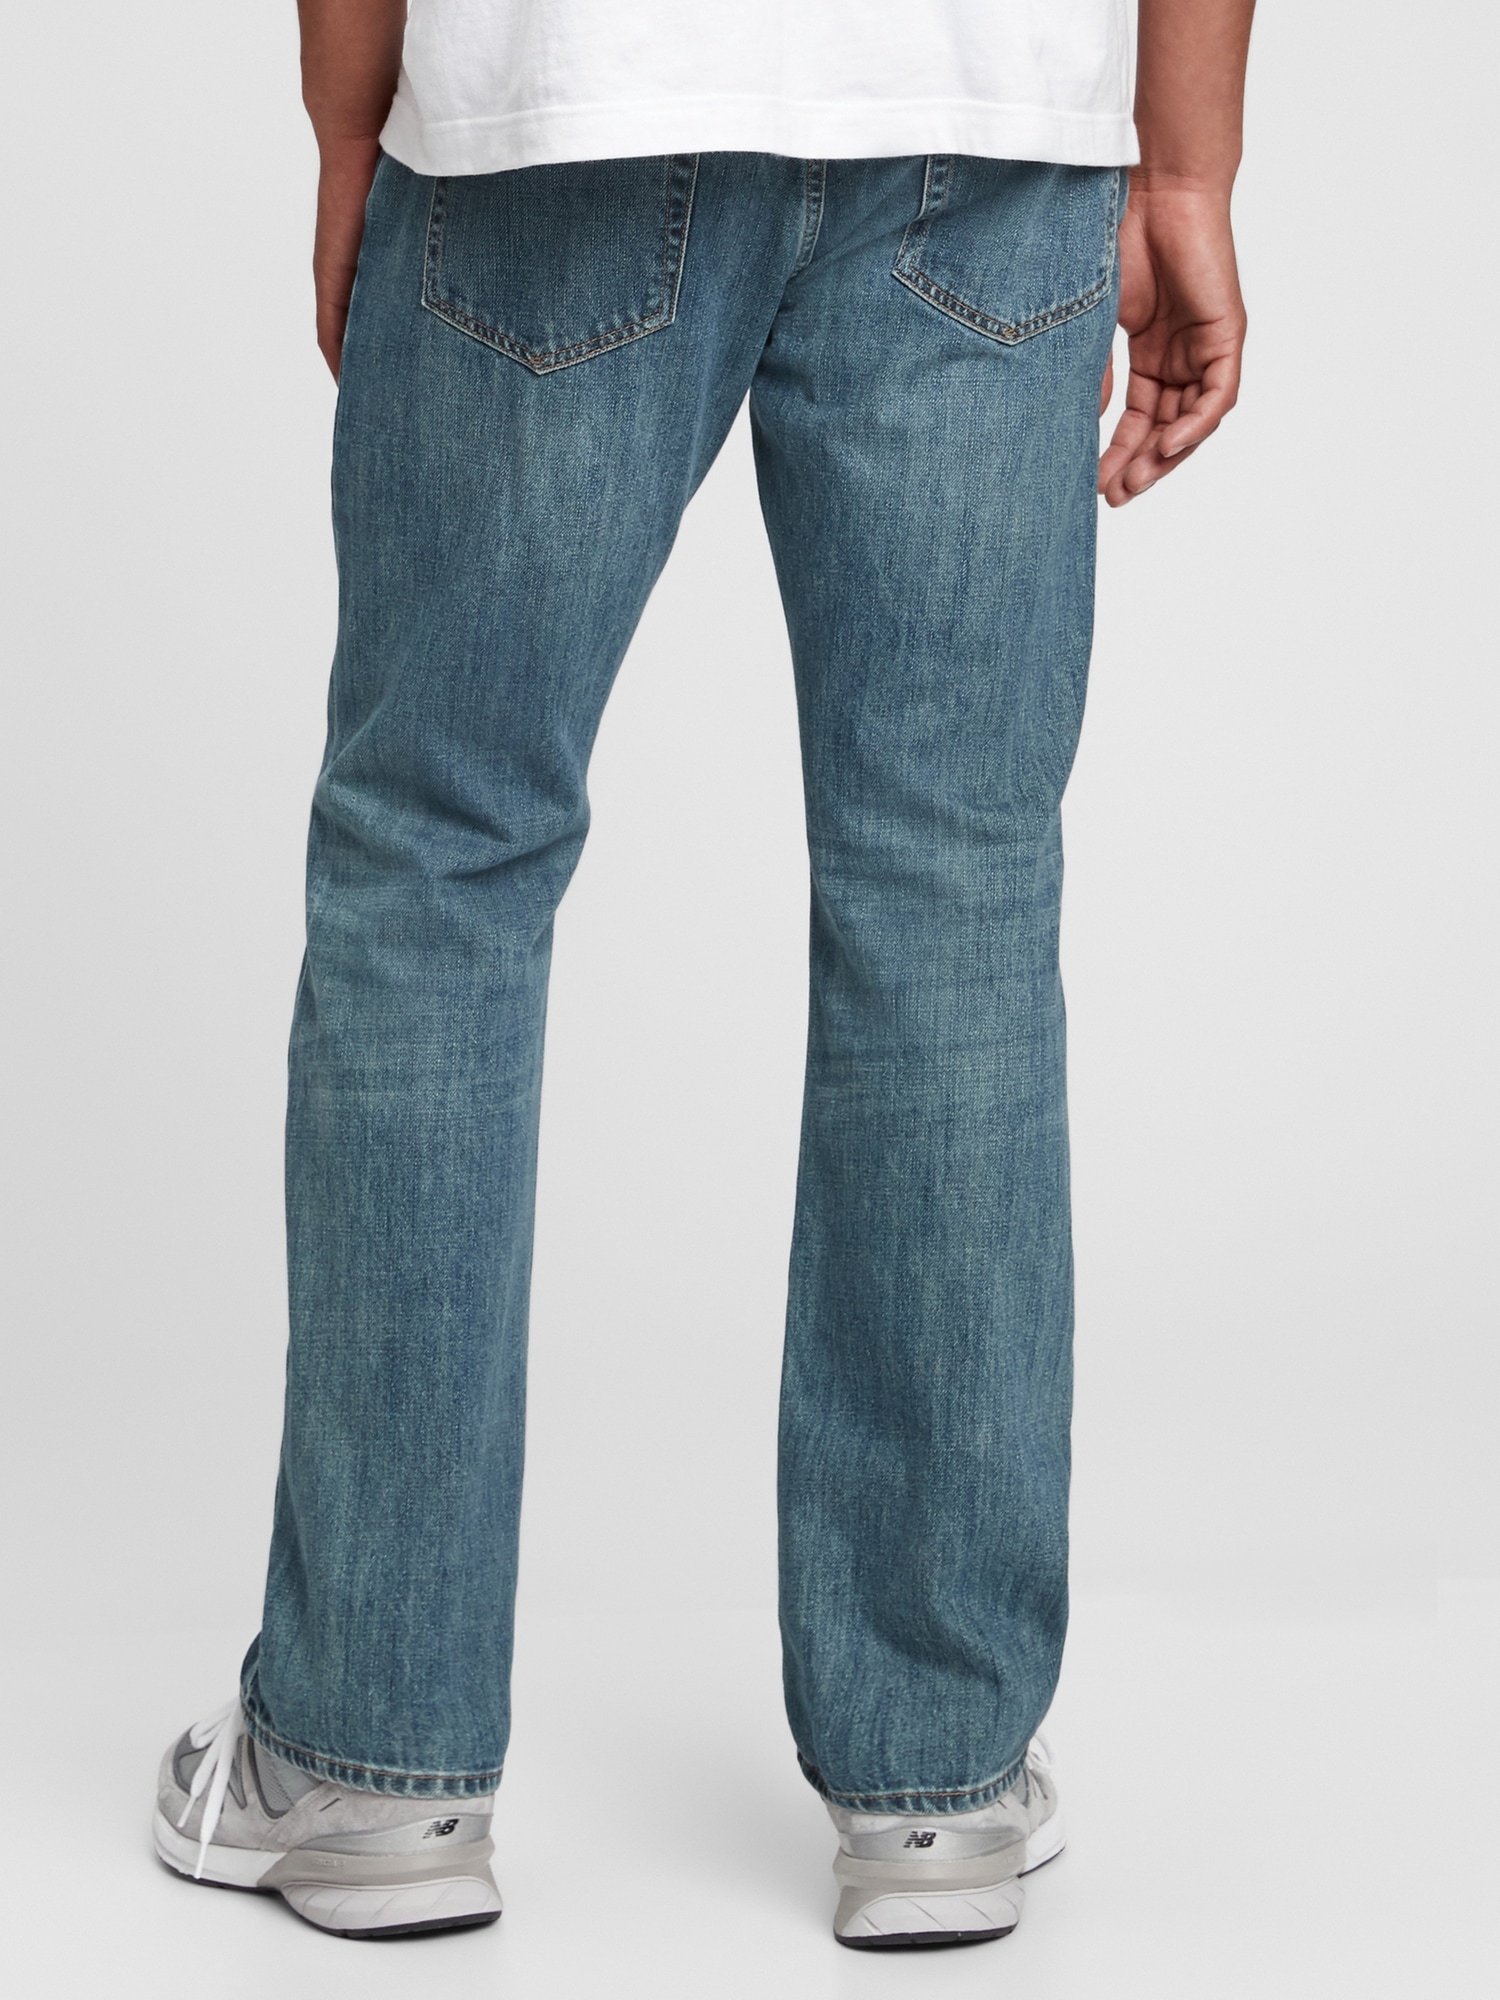 Flikkeren twaalf Als reactie op de Boot Jeans with Washwell | Gap